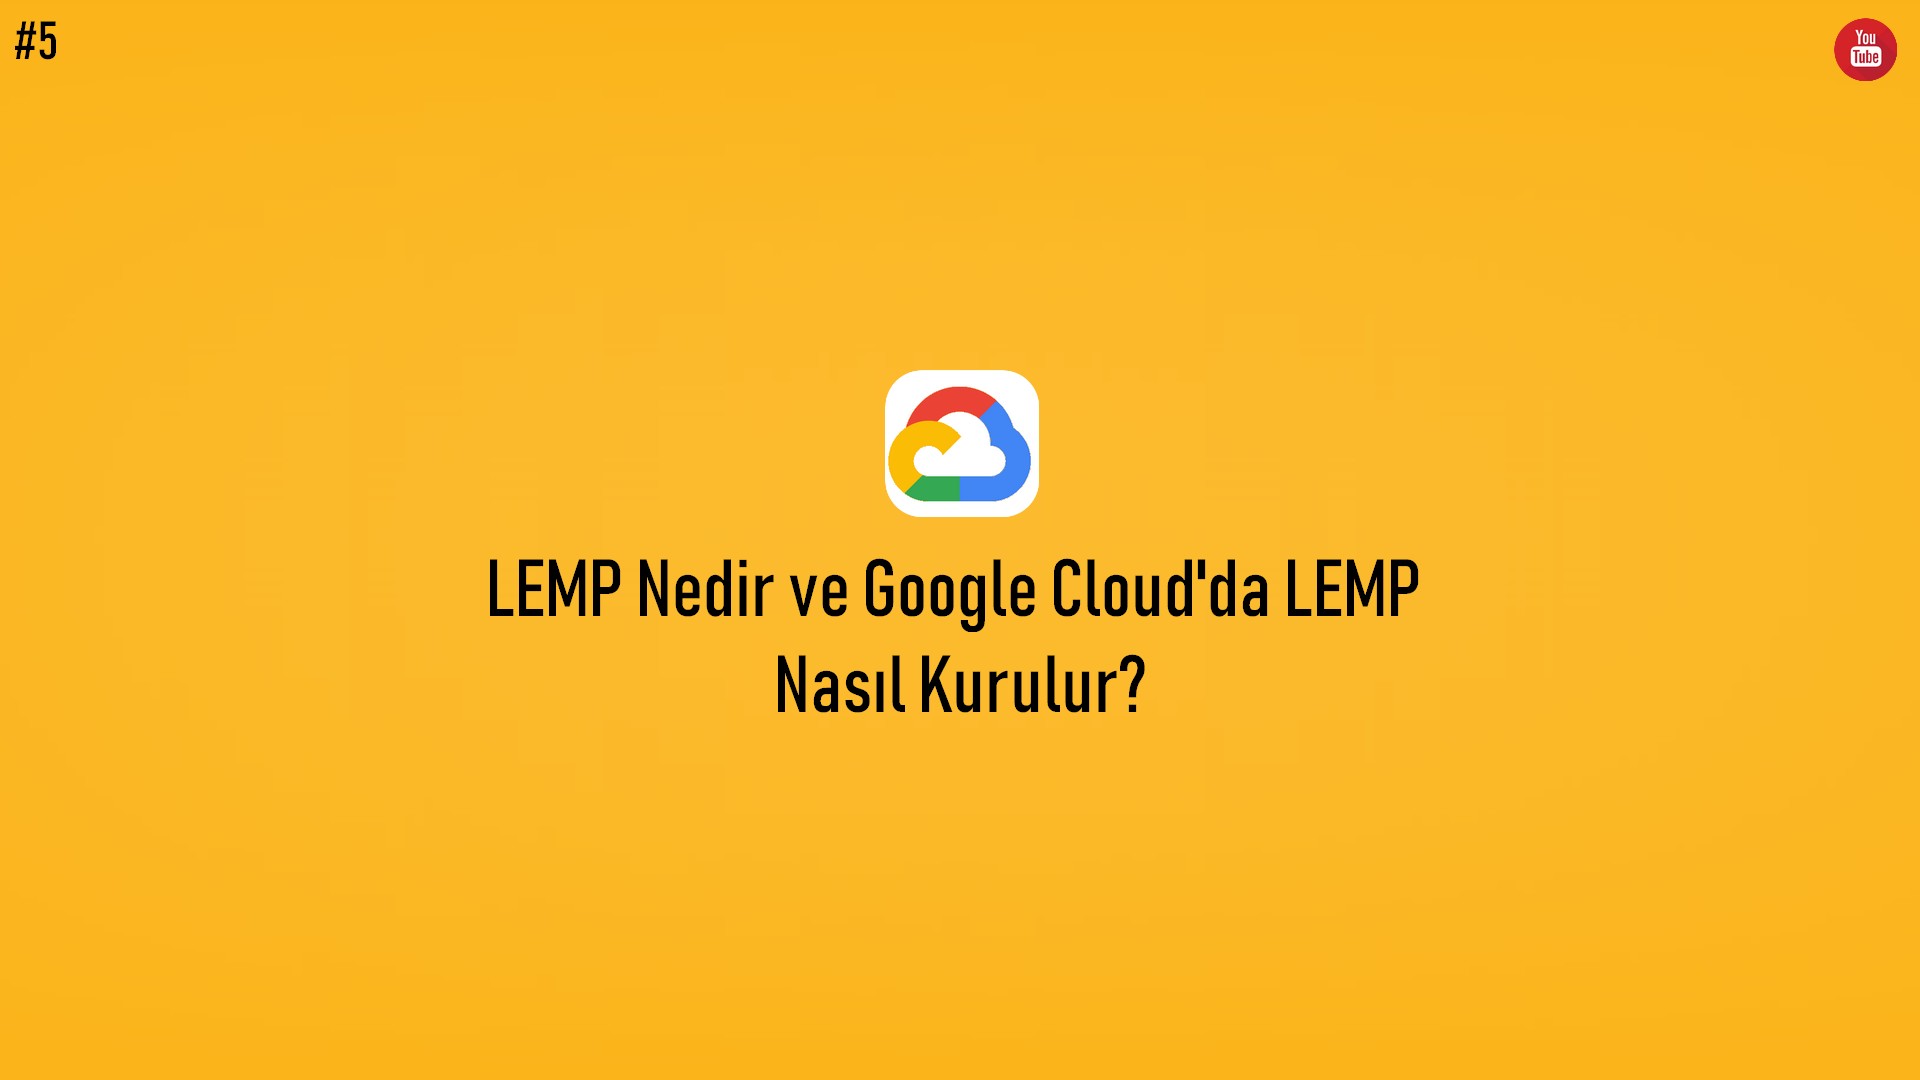 LEMP Nedir ve Google Cloud'da LEMP Nasıl Kurulur? (Video İçerik) başlıklı içeriğin kapak resmi.